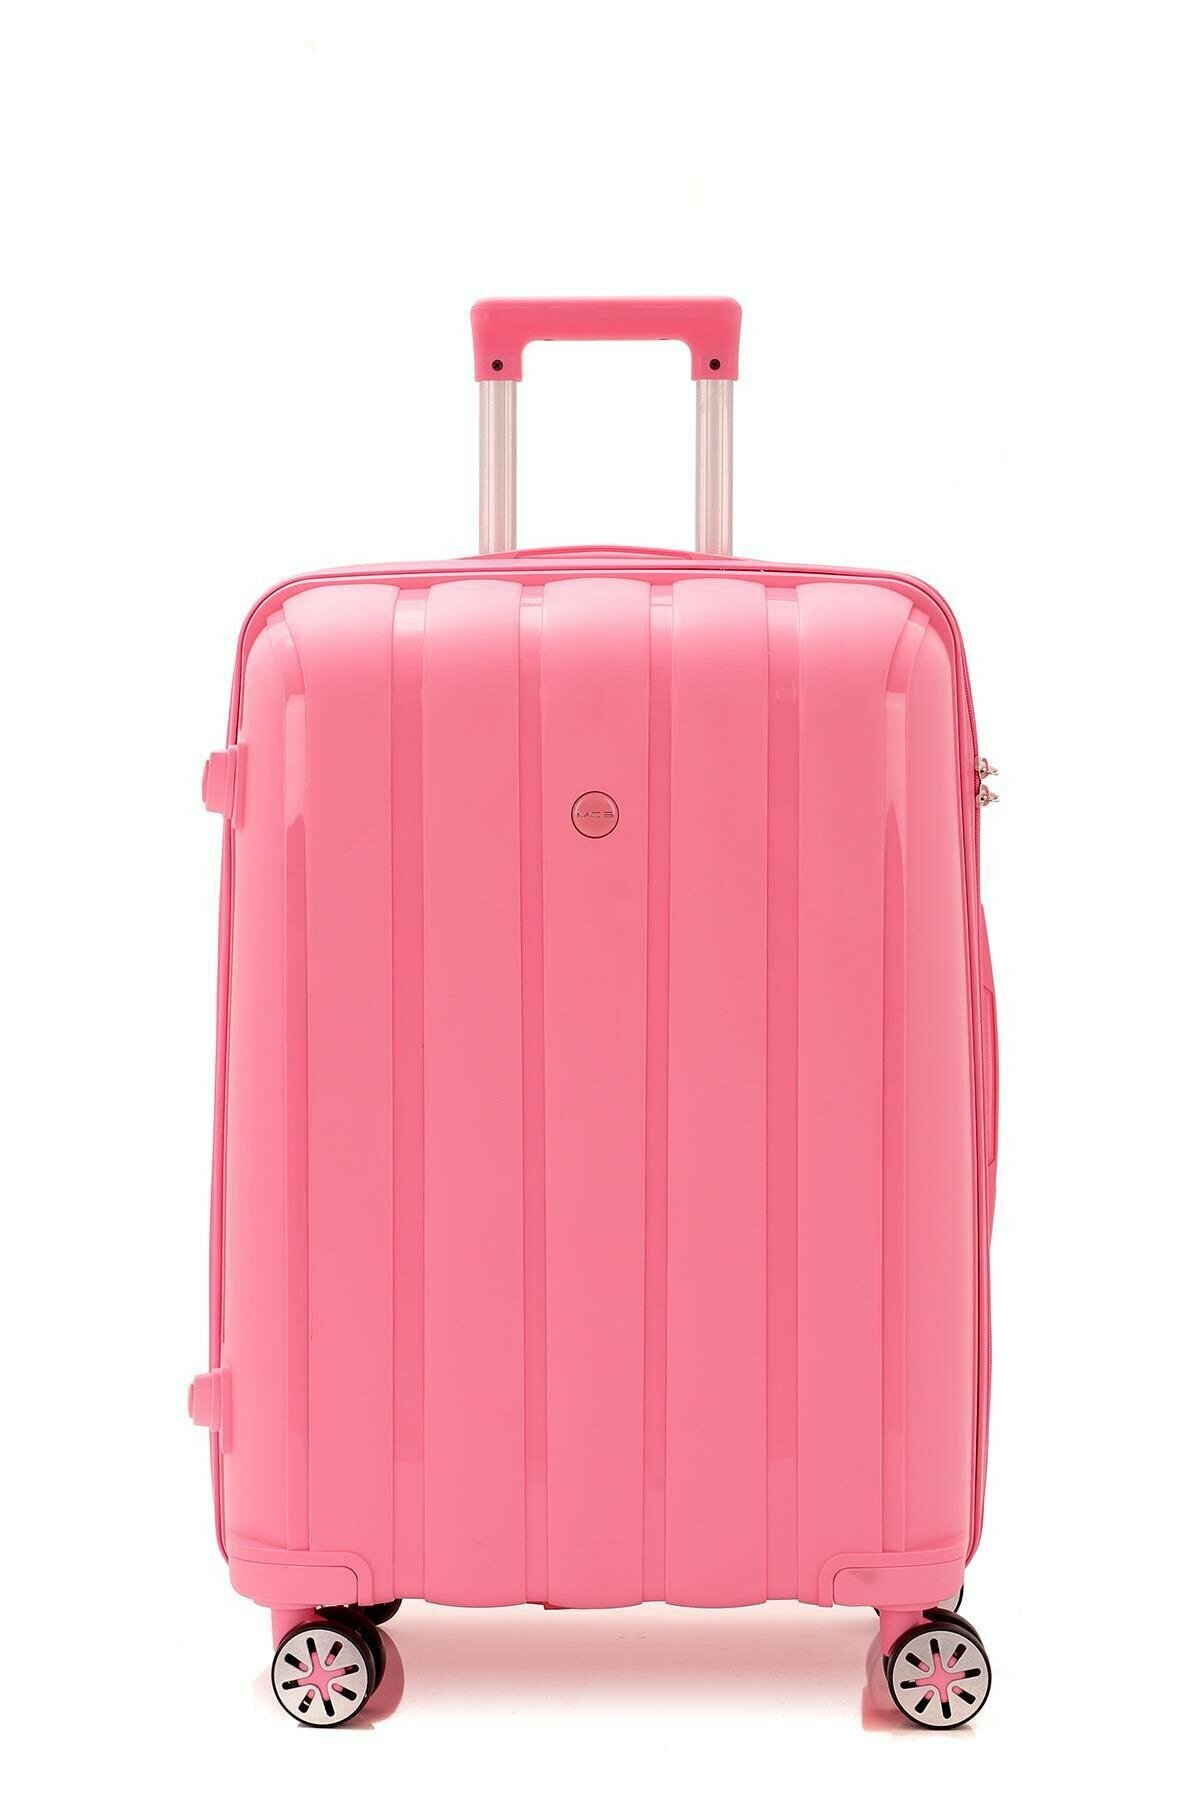 Маленький чемодан для ручьной клади из полипропилена MCS V305 S PINK! Для 8-10 кг! - 1